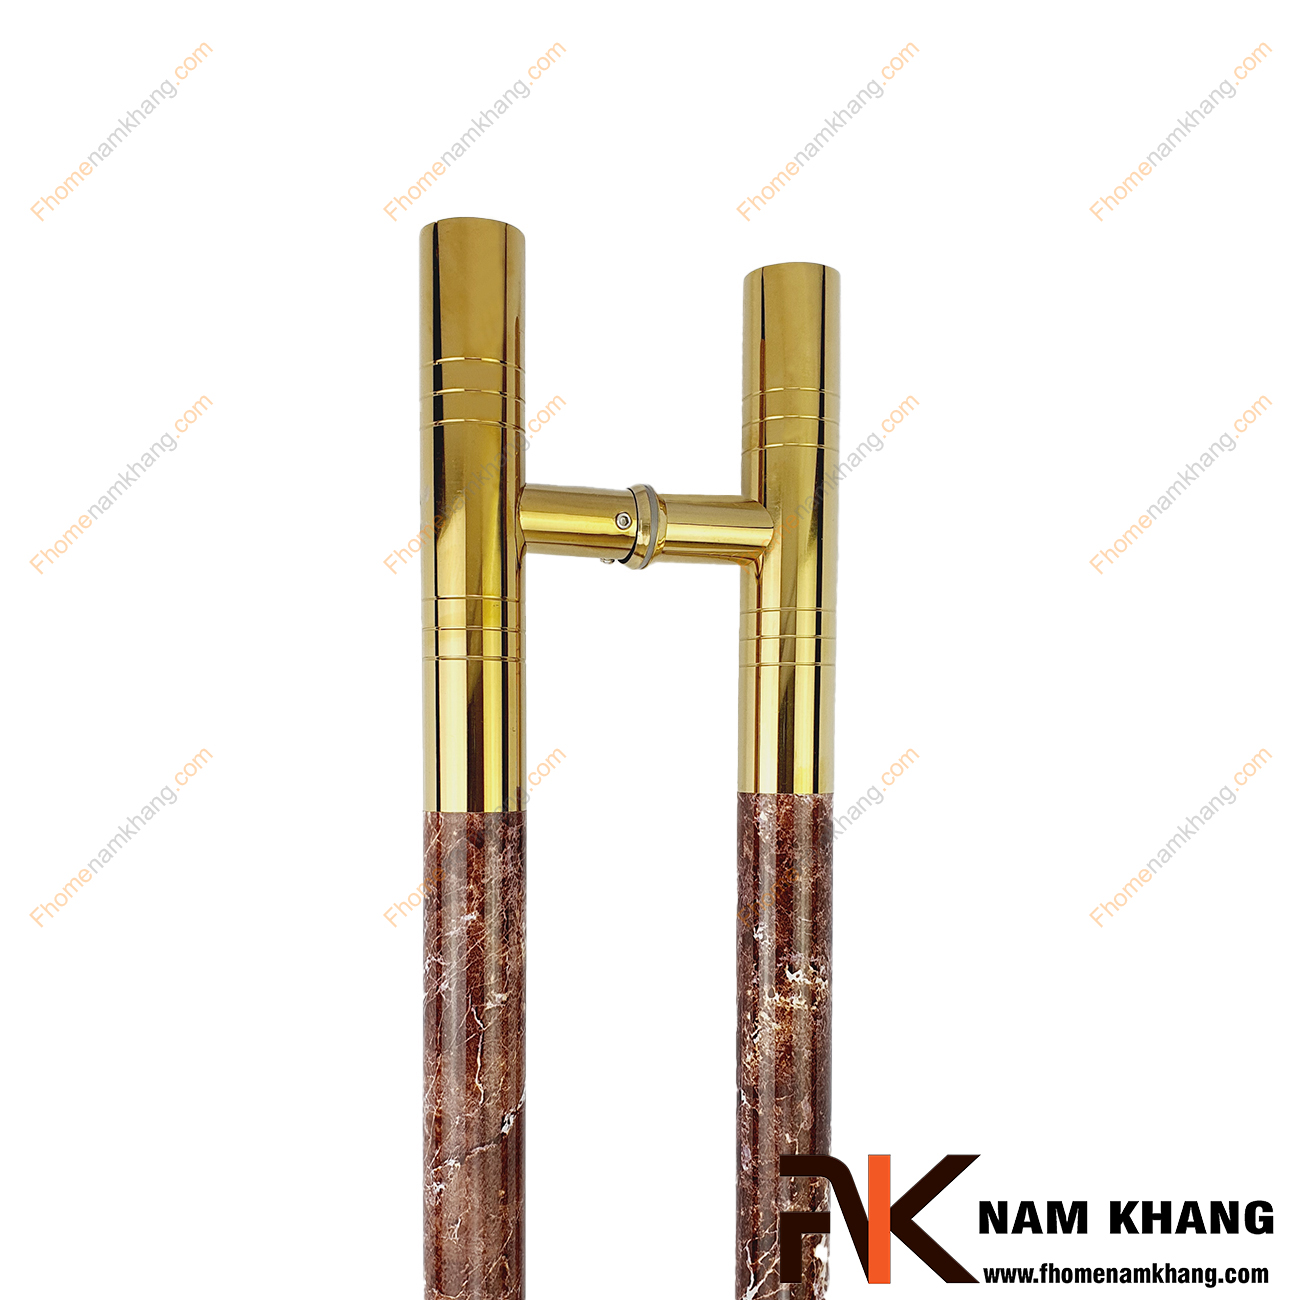 Tay nắm cửa chính màu vàng bóng phối vân đá nâu NKC014-NV là tay nắm dạng thanh tròn, có kích thước lớn phù hợp dùng cho cửa gỗ, cửa lớn, cửa 2 hoặc 4 cánh,...